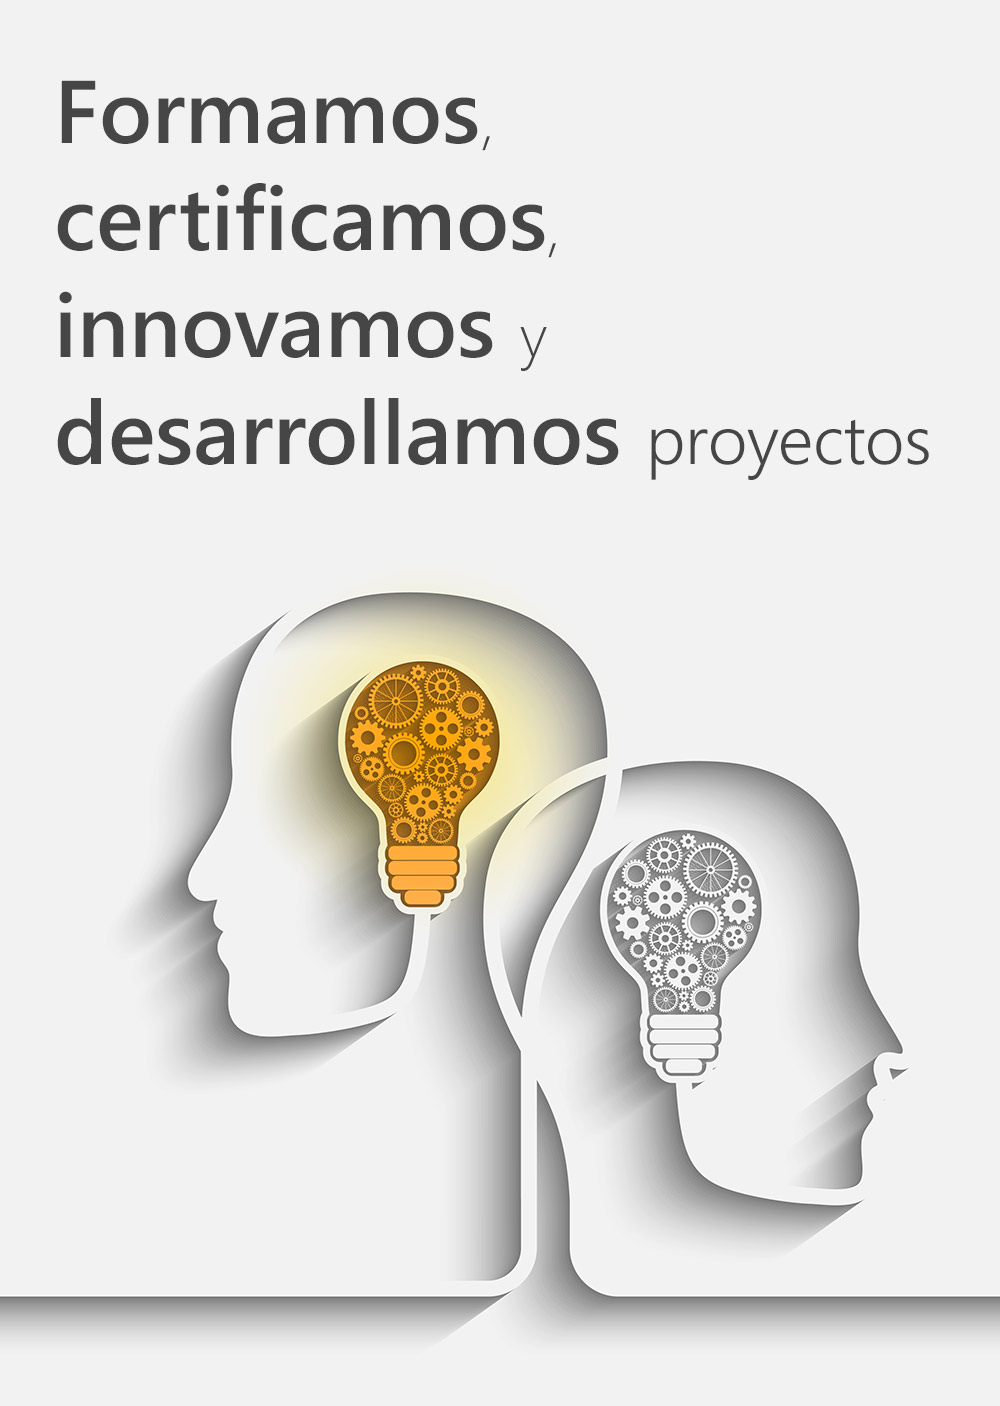 Formamos, certificamos, innovamos y desarrollamos proyectos